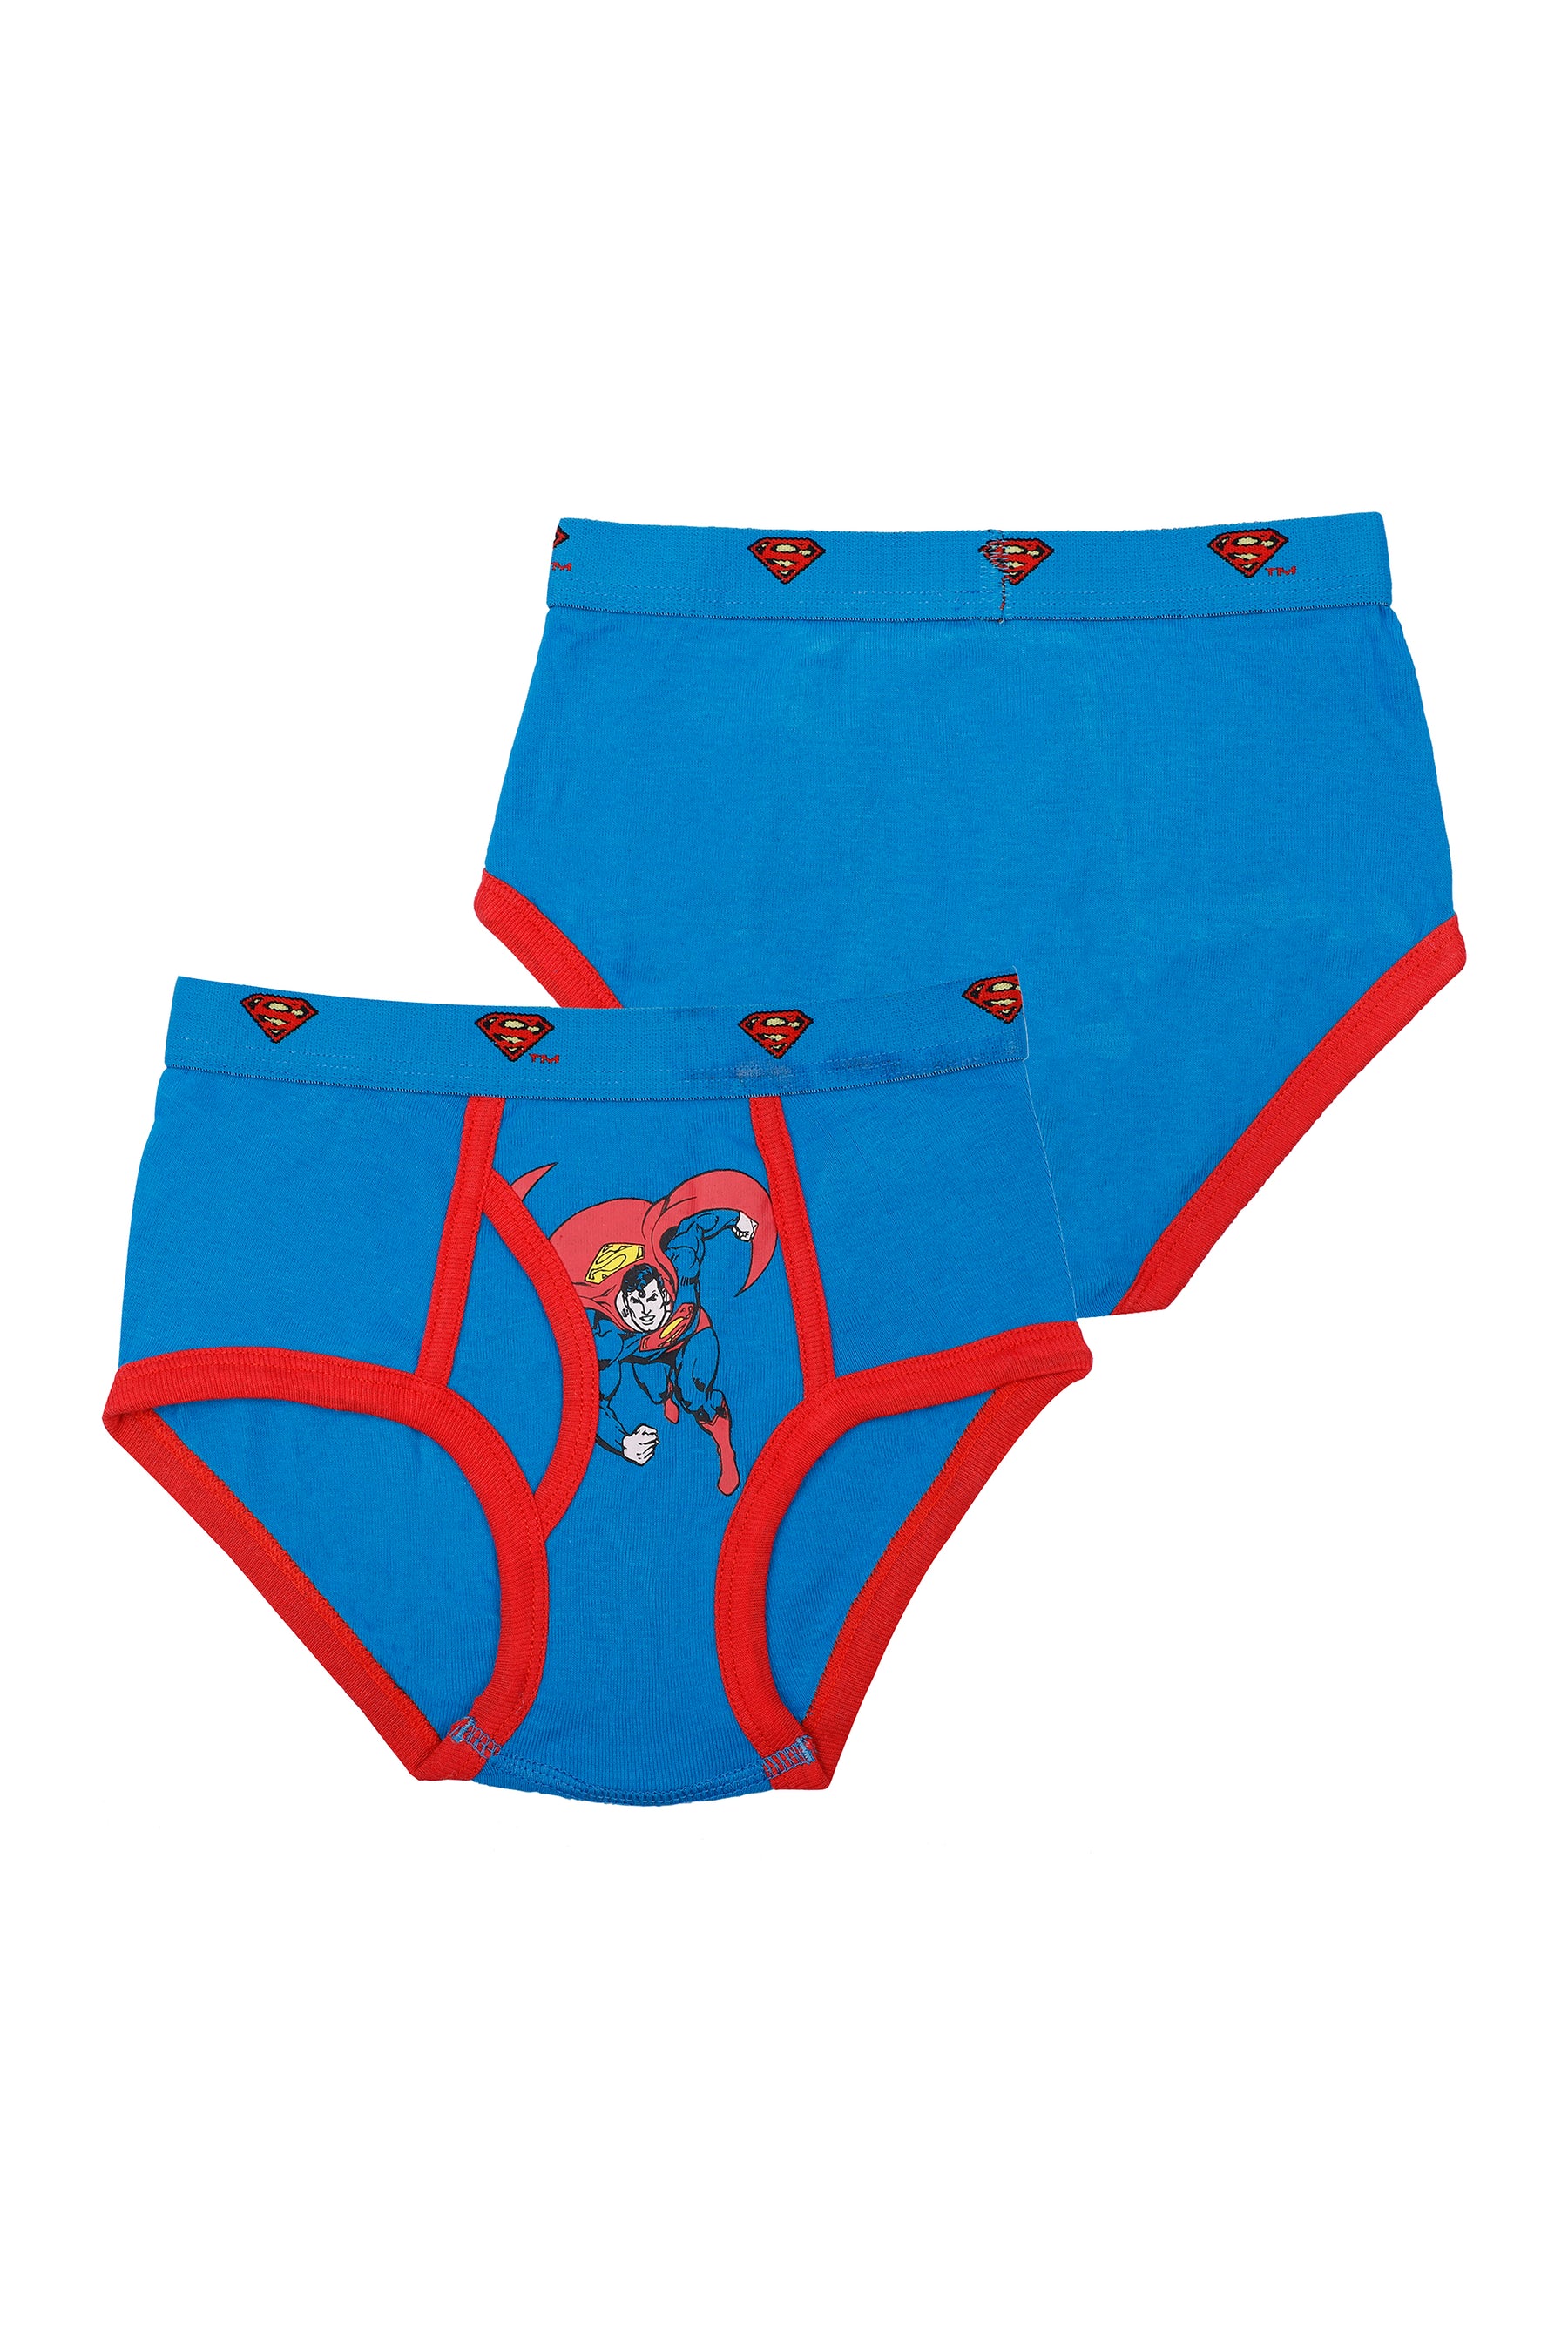 Mens Superman Underwear Cartoon Briefs Cute Mens Underwear DC Briefs